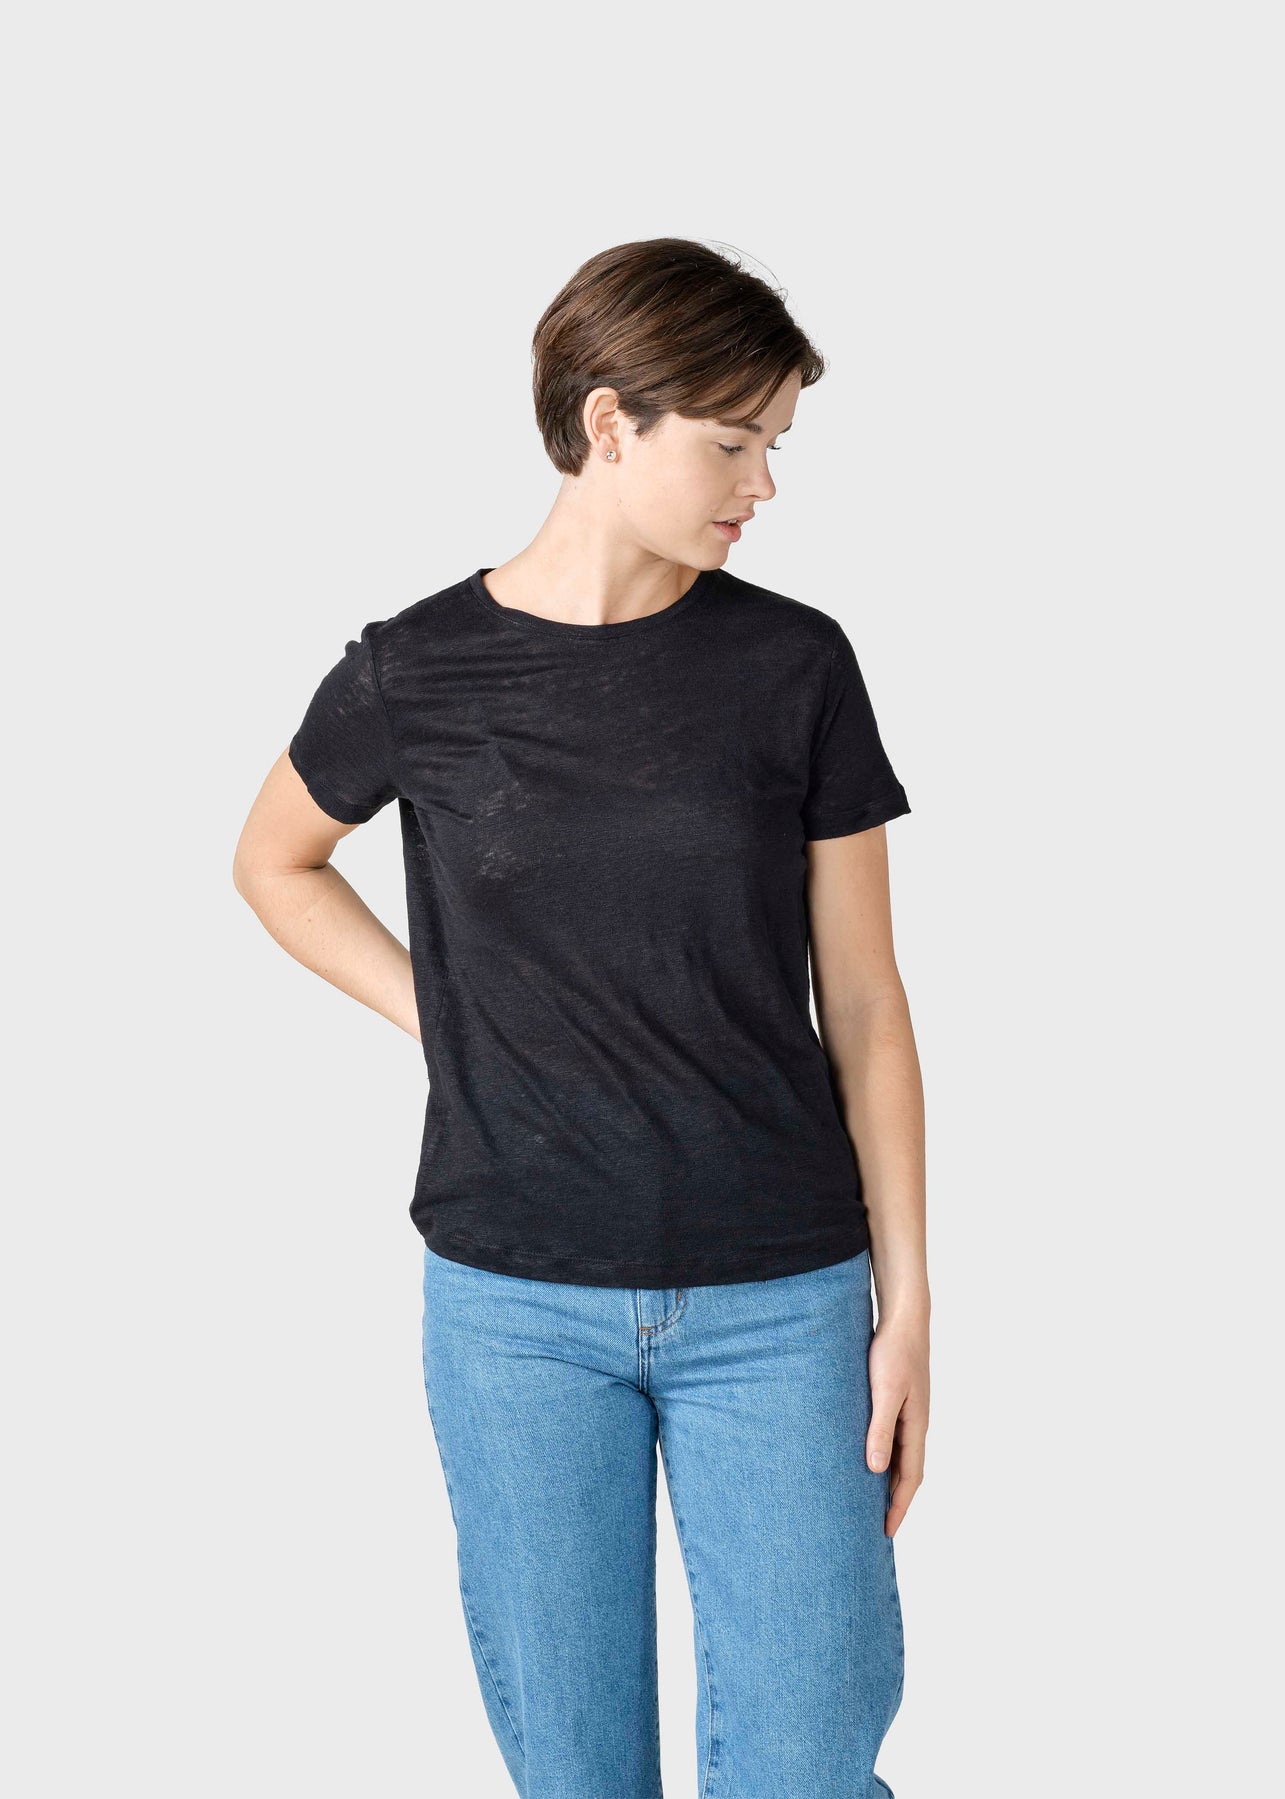 Leinen T-Shirt Modell: Rikke